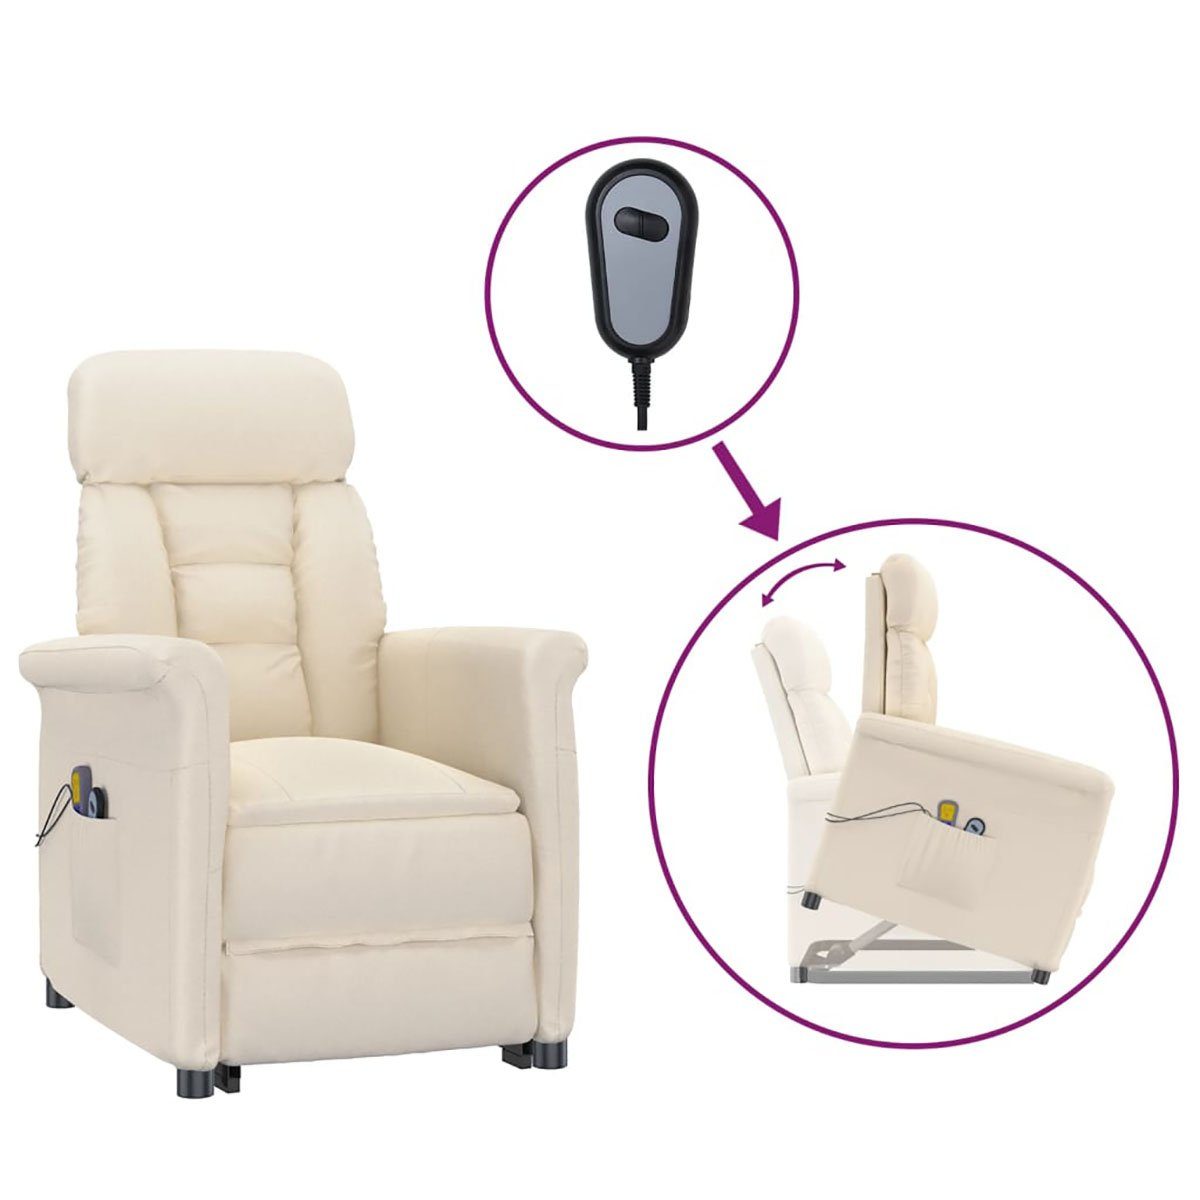 Beige DOTMALL Mikrofaser Massagesessel Elektrischer Stuhl